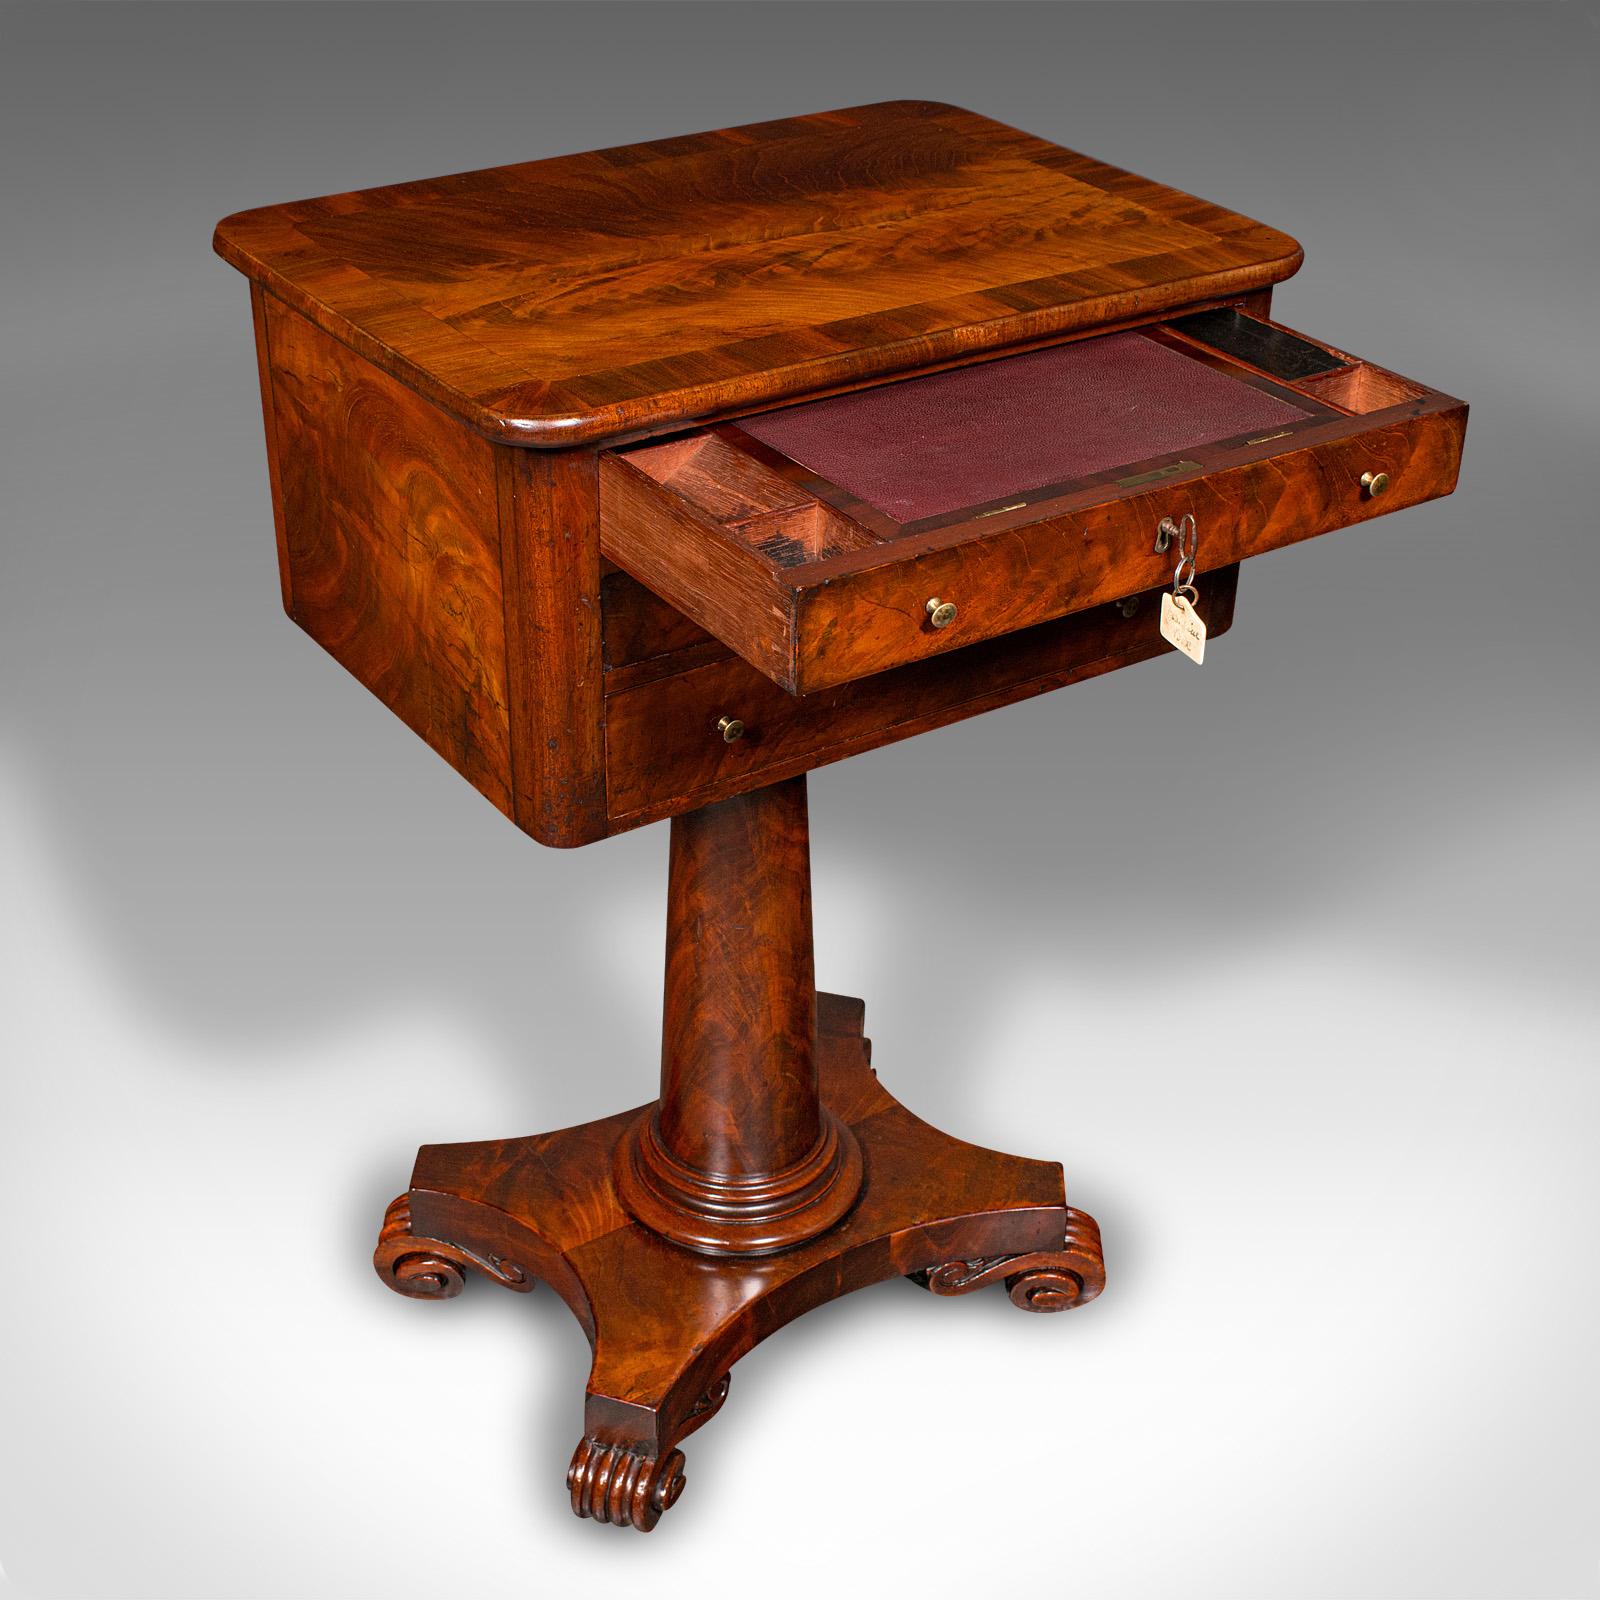 Dies ist ein kleiner antiker Damen-Korrespondenztisch. Ein englischer Schreibtisch aus geflammtem Mahagoni, aus der Zeit Wilhelms IV. um 1835.

Feine Auswahl an Funktionen und Speicherplatz in einer ansprechenden, kompakten Form
Zeigt eine